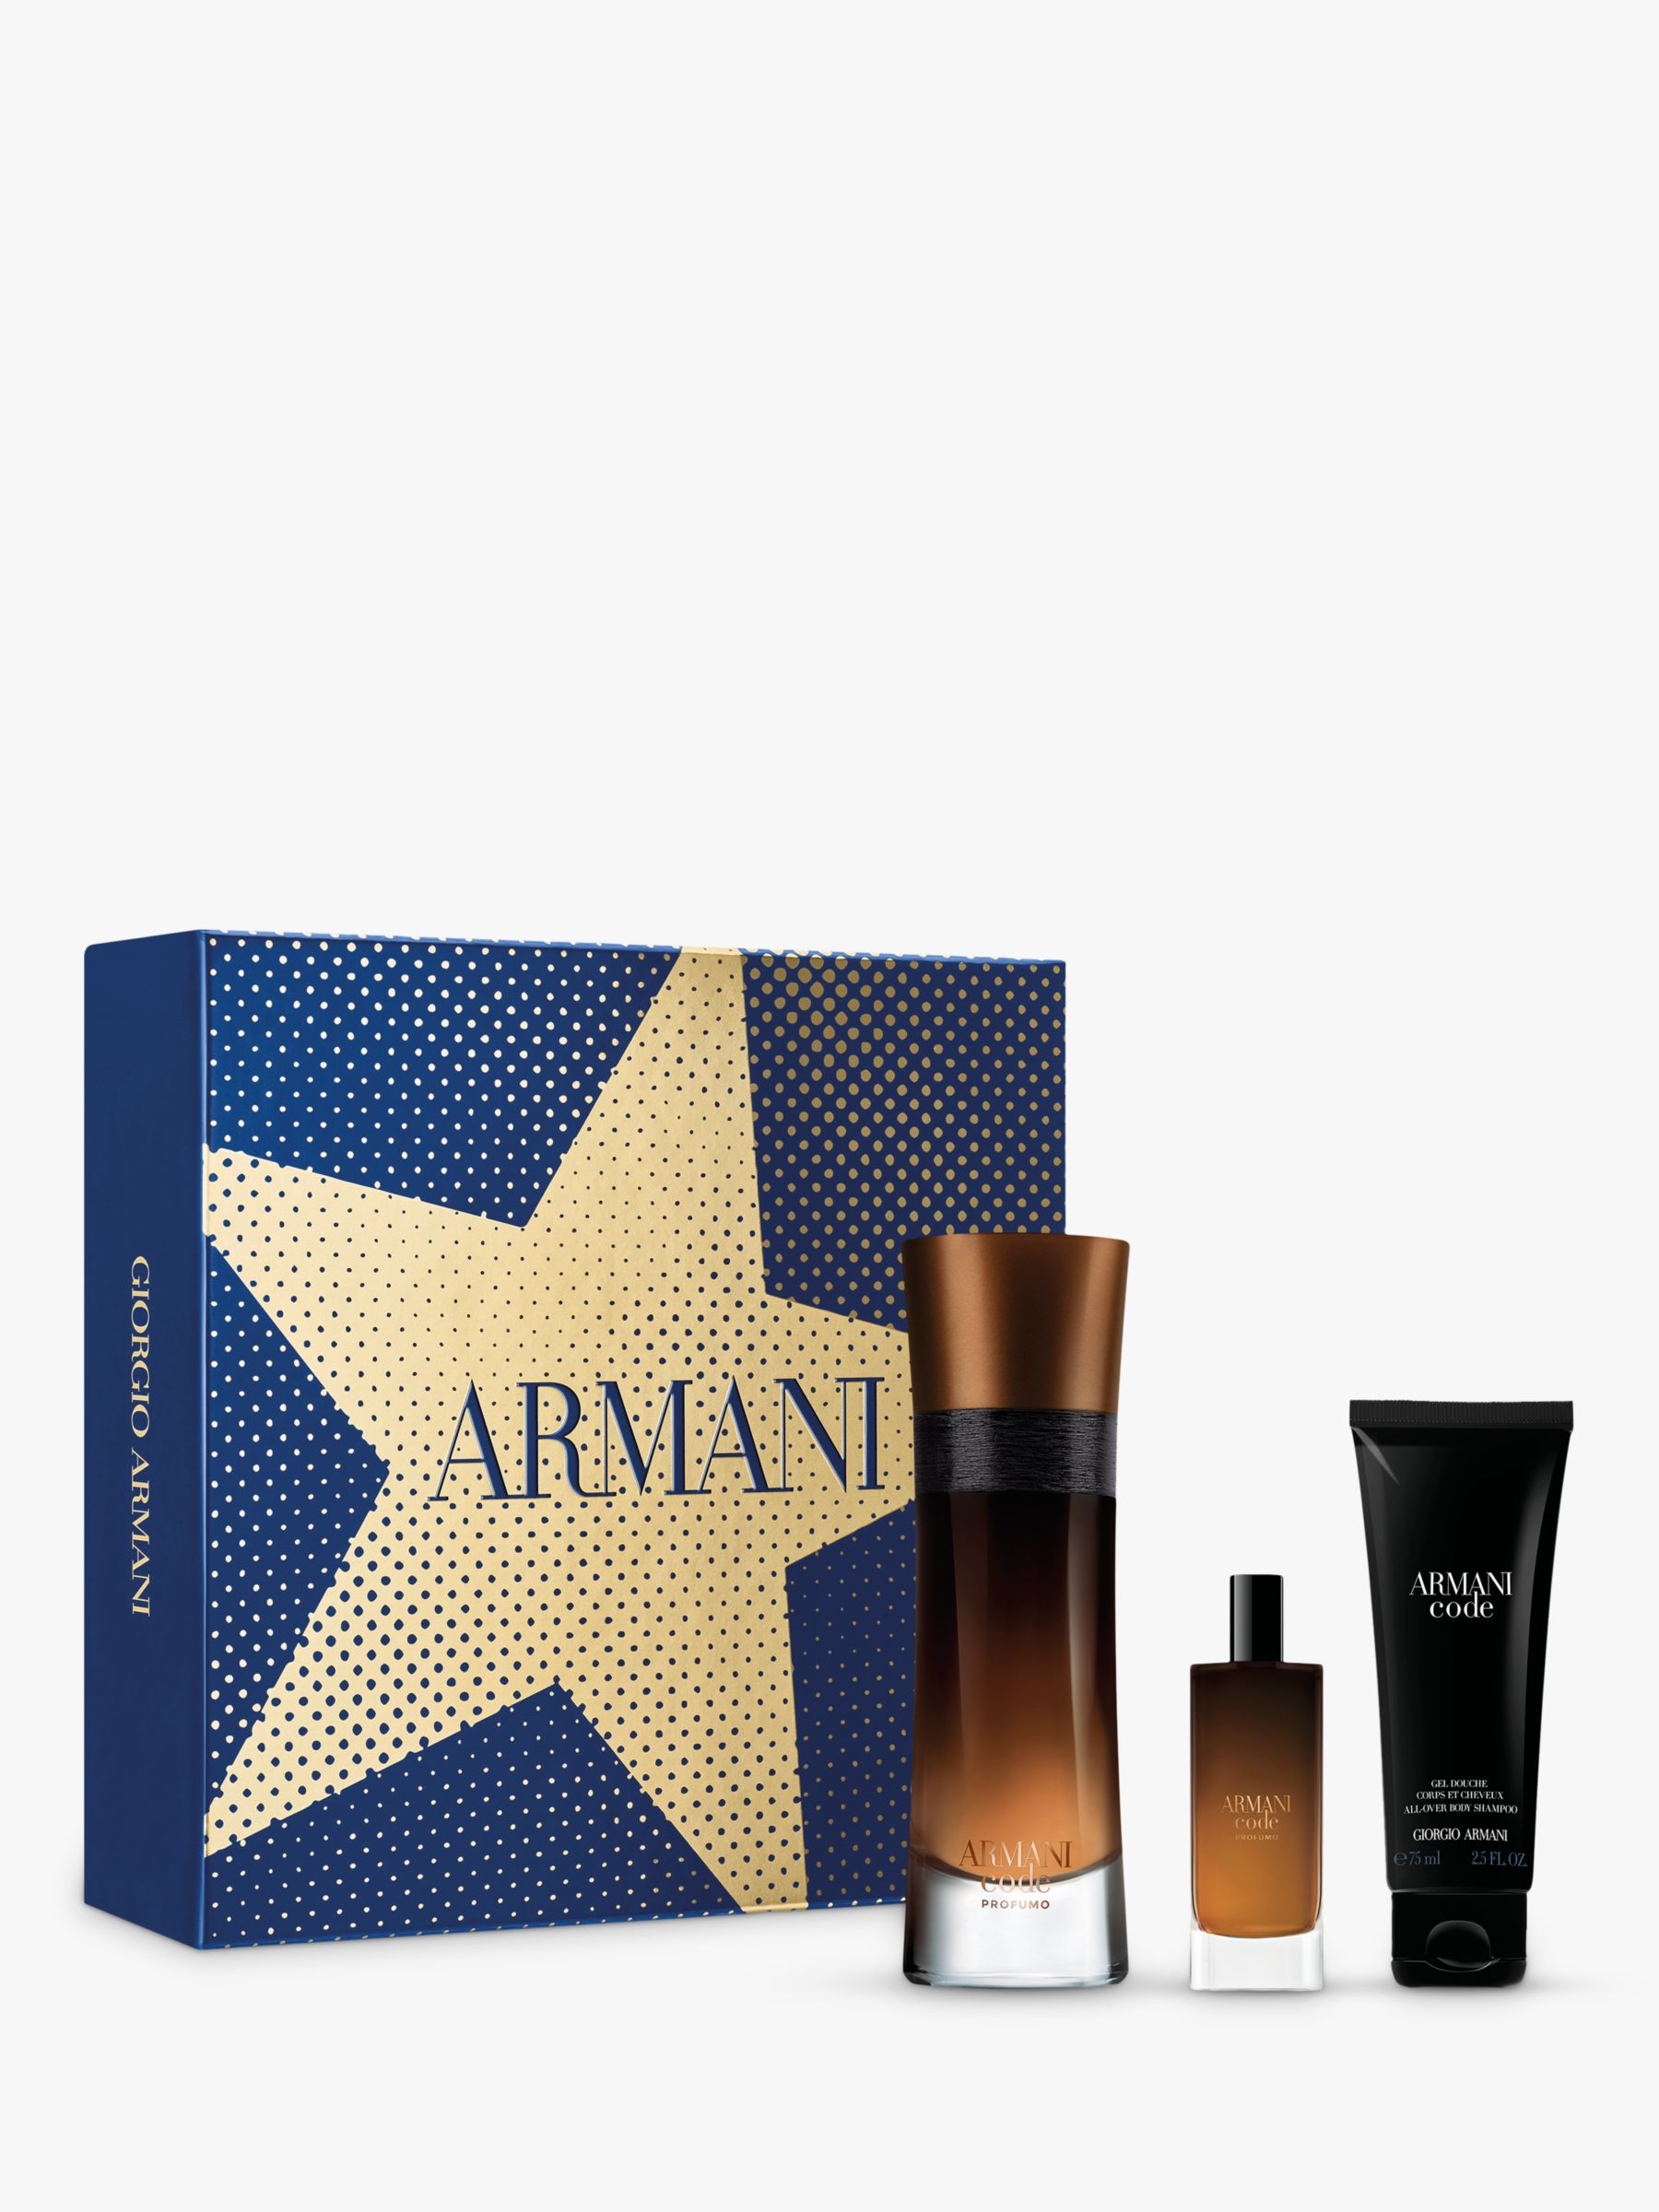 Giorgio Armani Armani Code Profumo 60ml Eau de Parfum Fragrance Gift Set